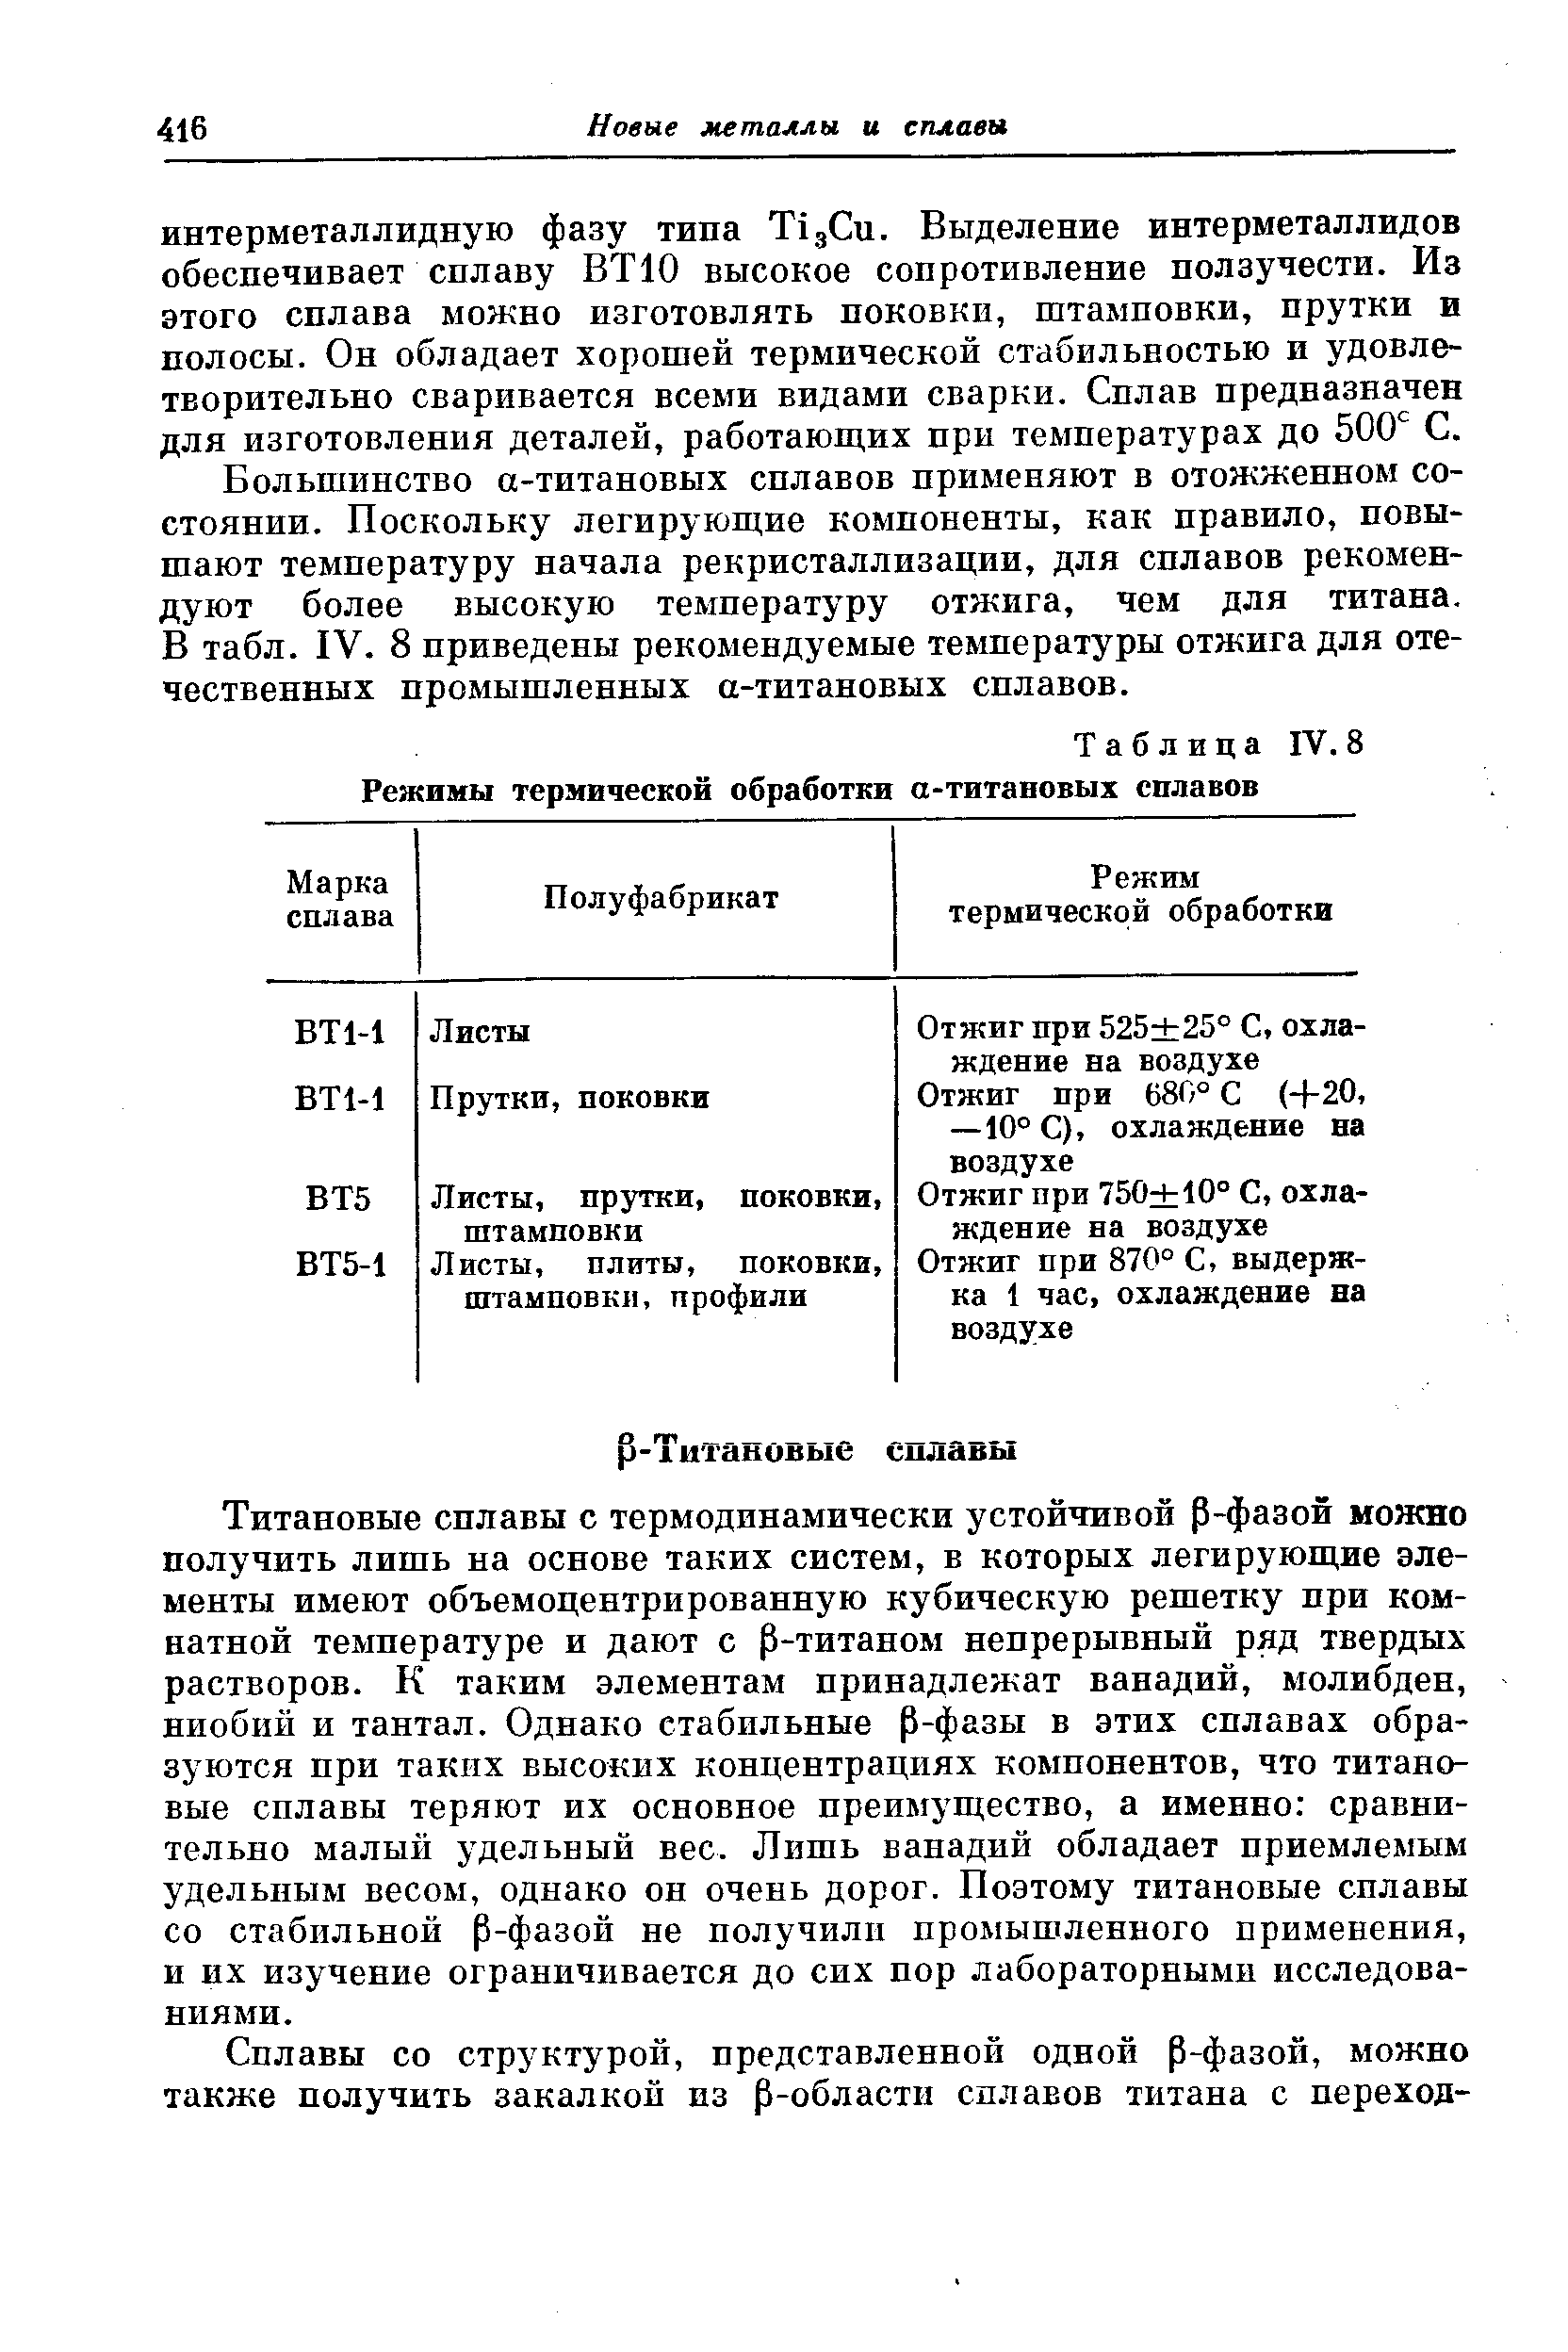 Таблица IV. 8 Режимы <a href="/info/6831">термической обработки</a> а-титановых сплавов
